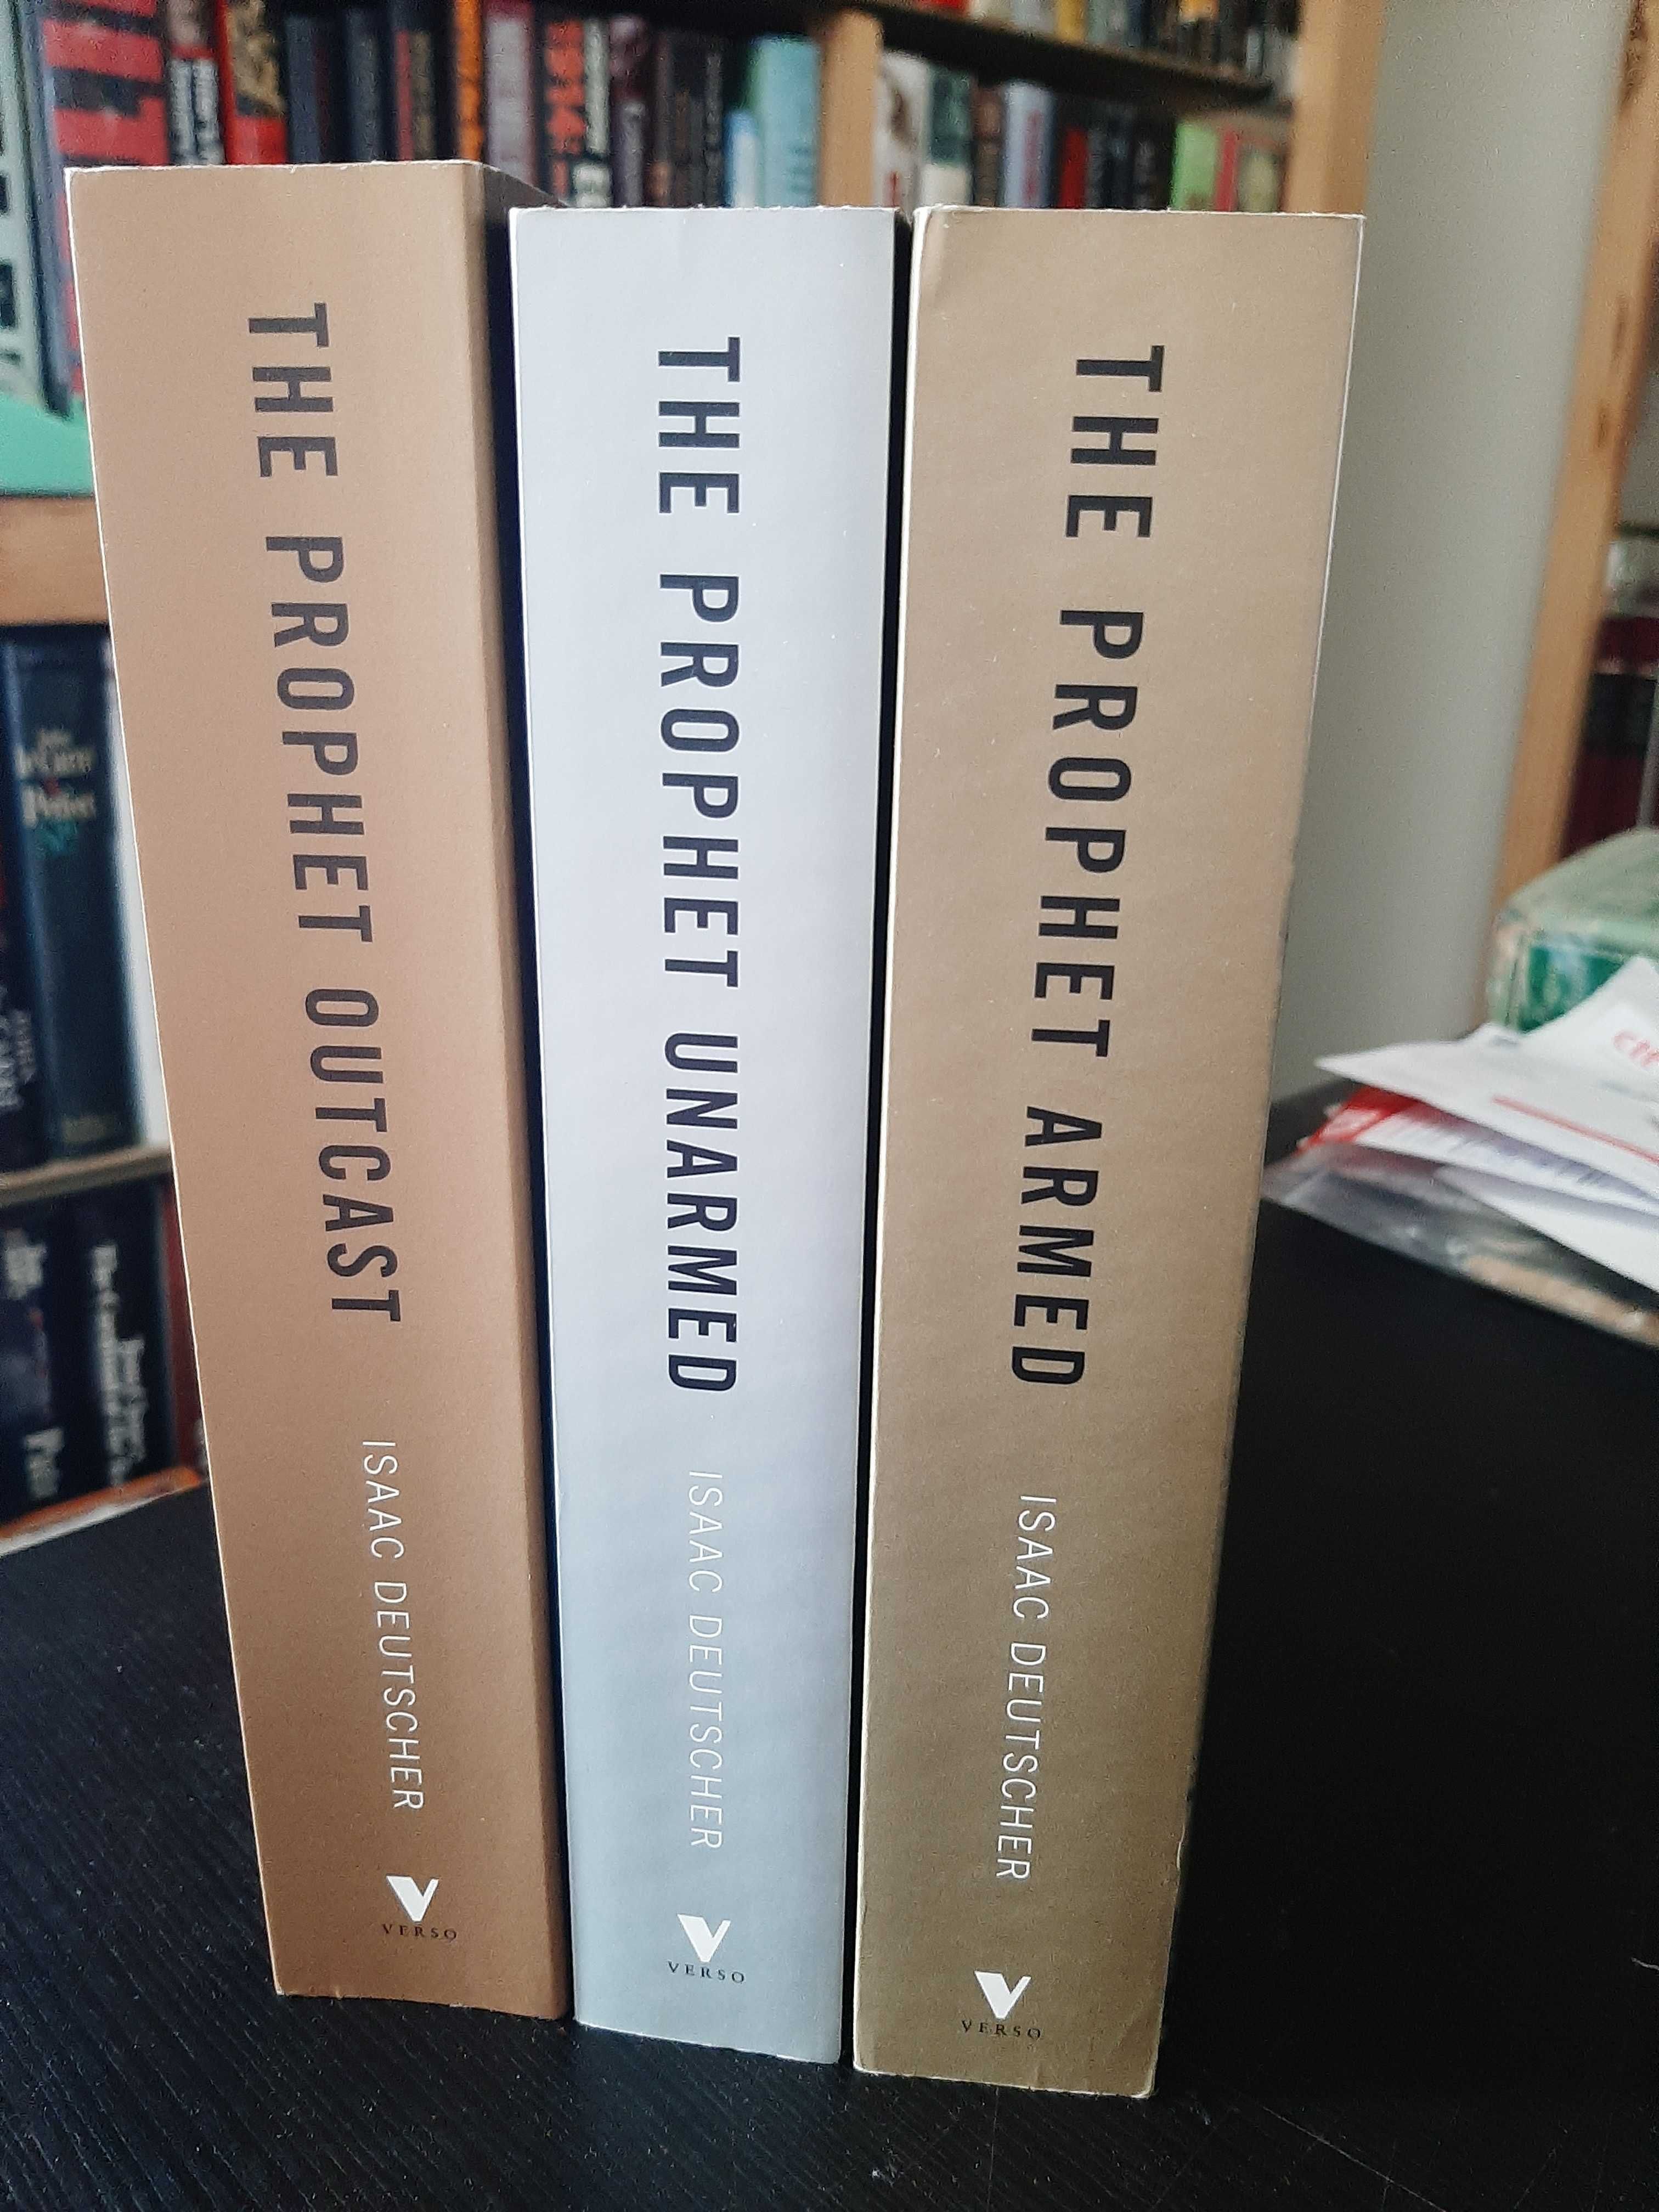 Isaac Deutscher – Trotsky – Biography in 3 volumes